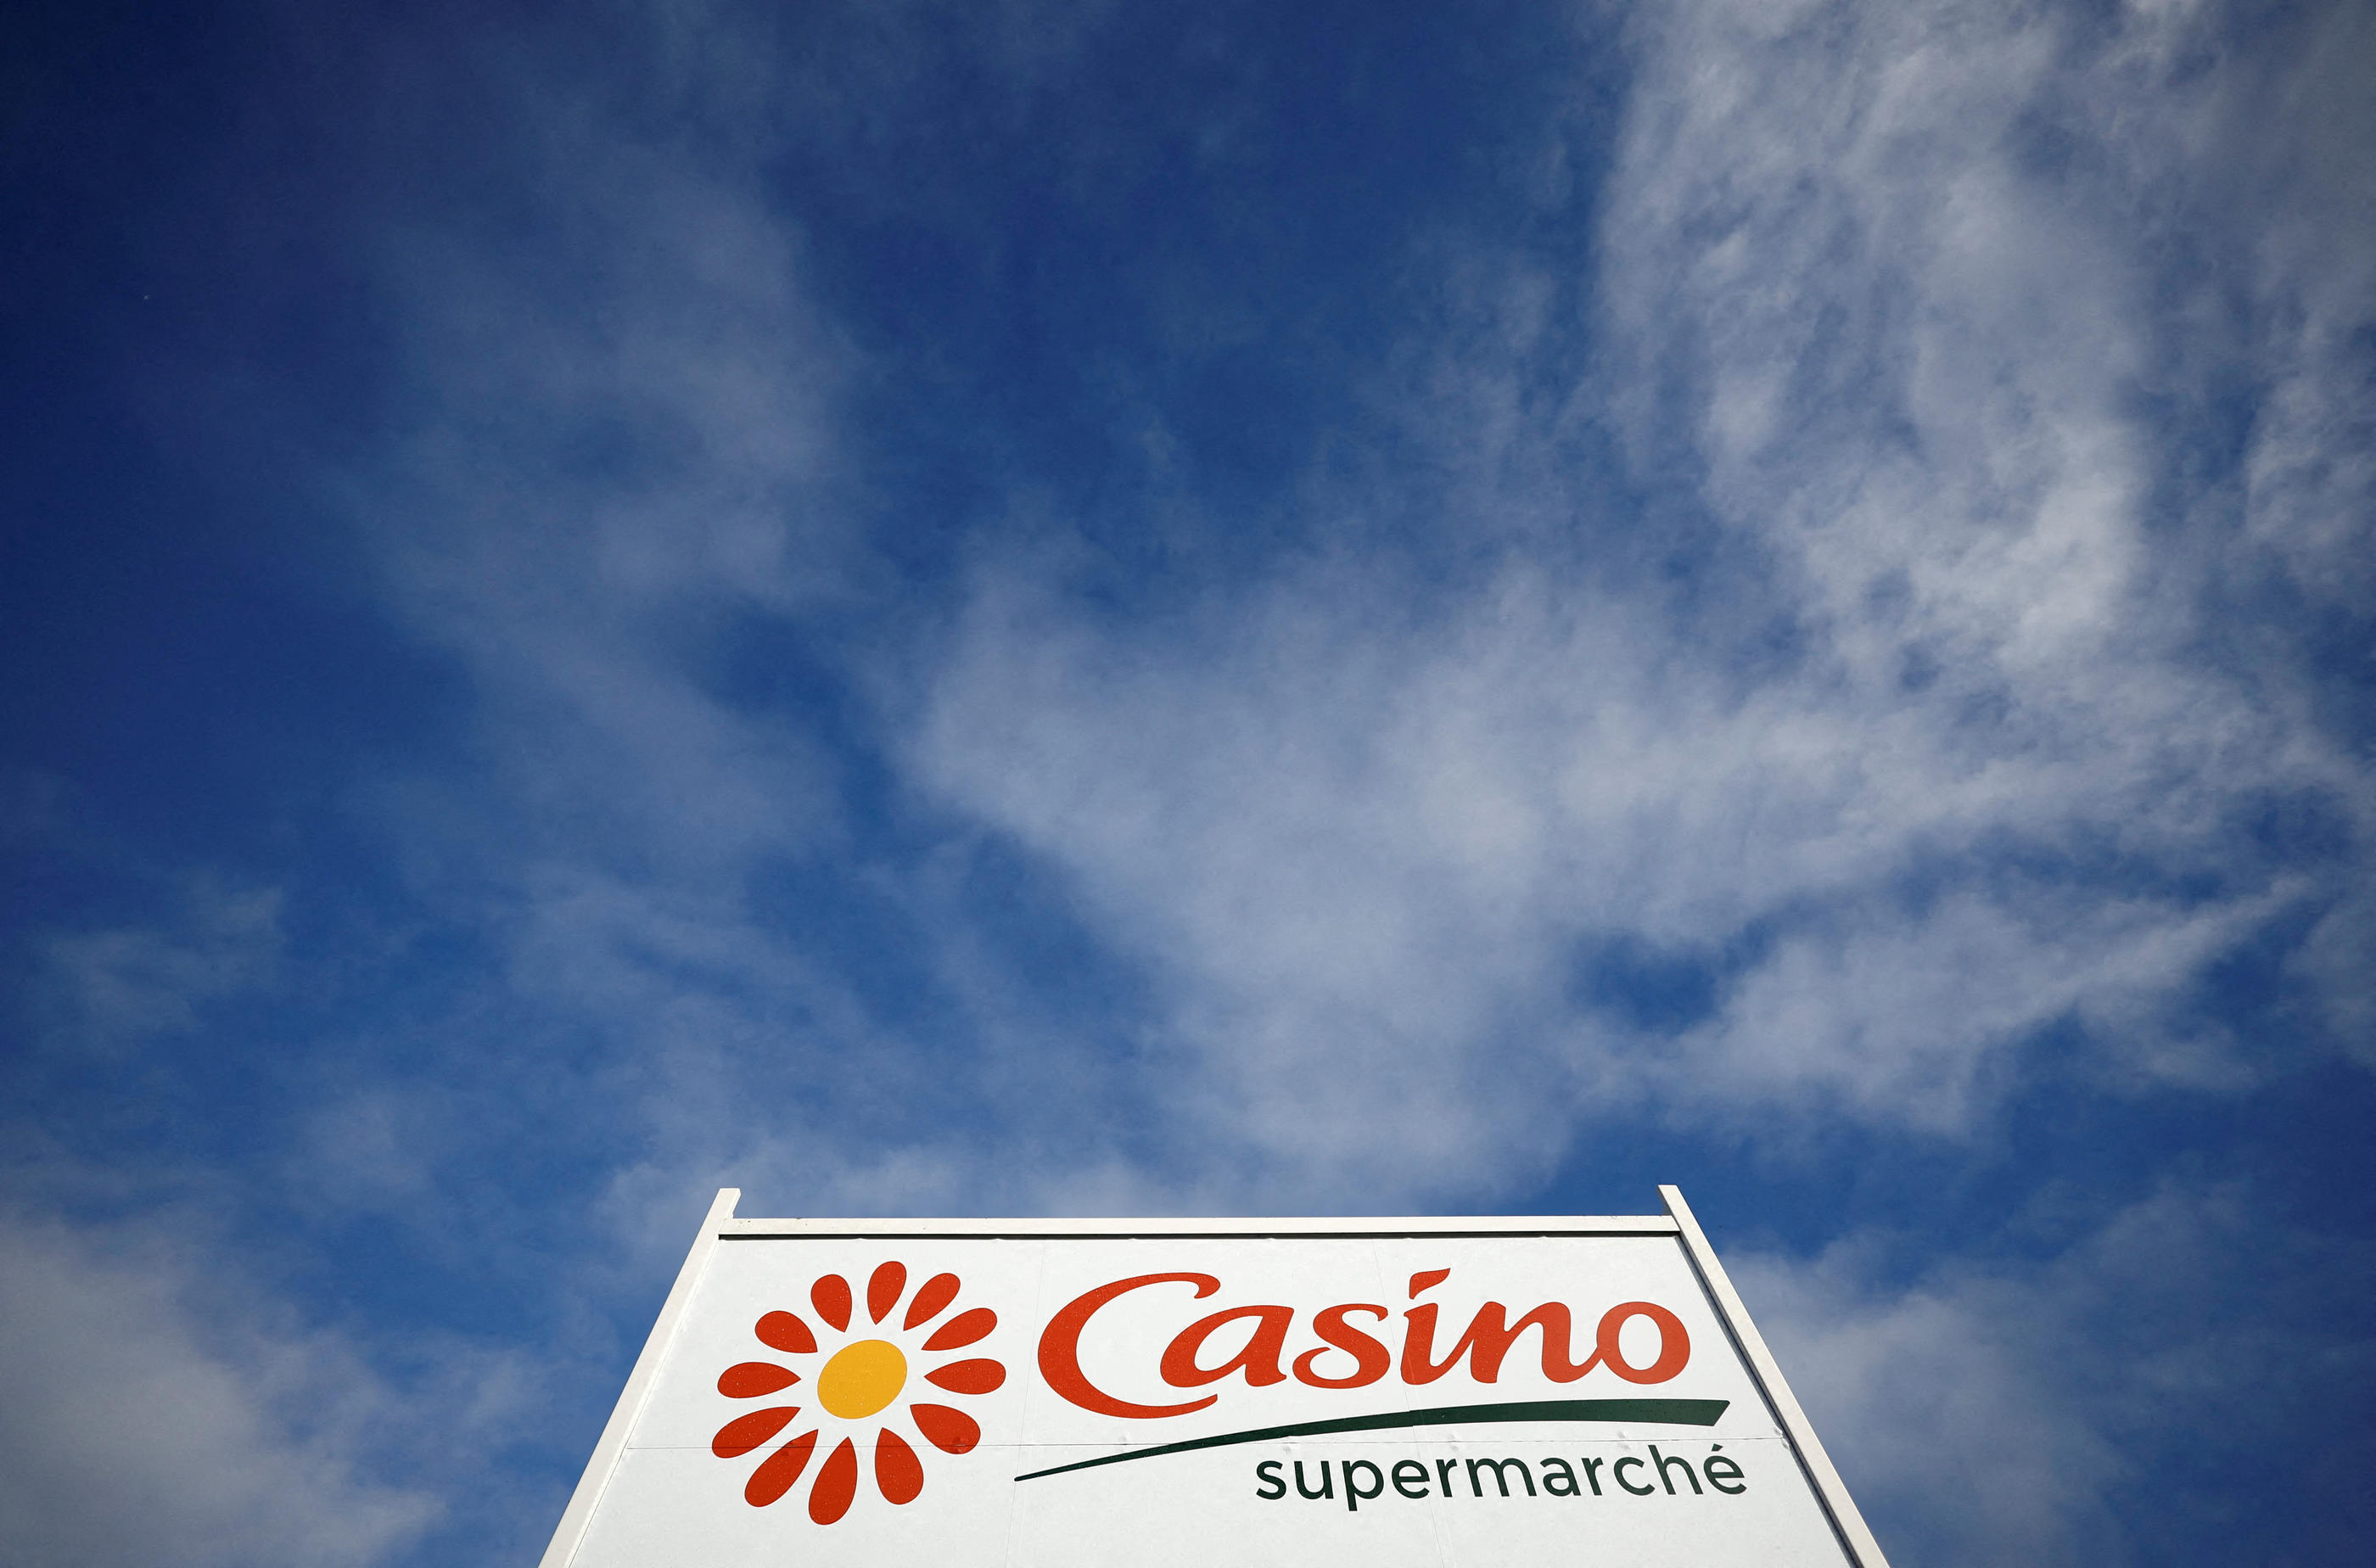 La quasi-totalité des magasins Casino vont être prochainement cédés. Reuters/Stephane Mahe